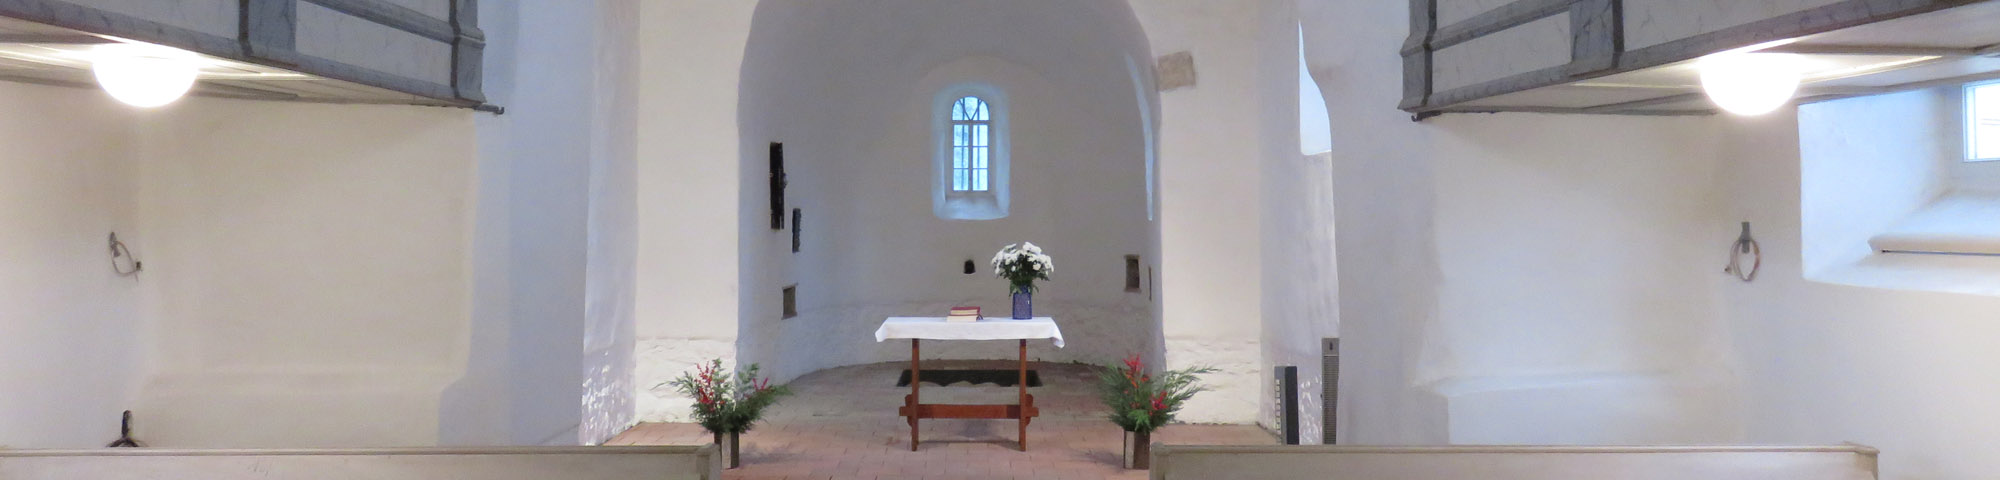 Altar der Kirche Hirschfeld